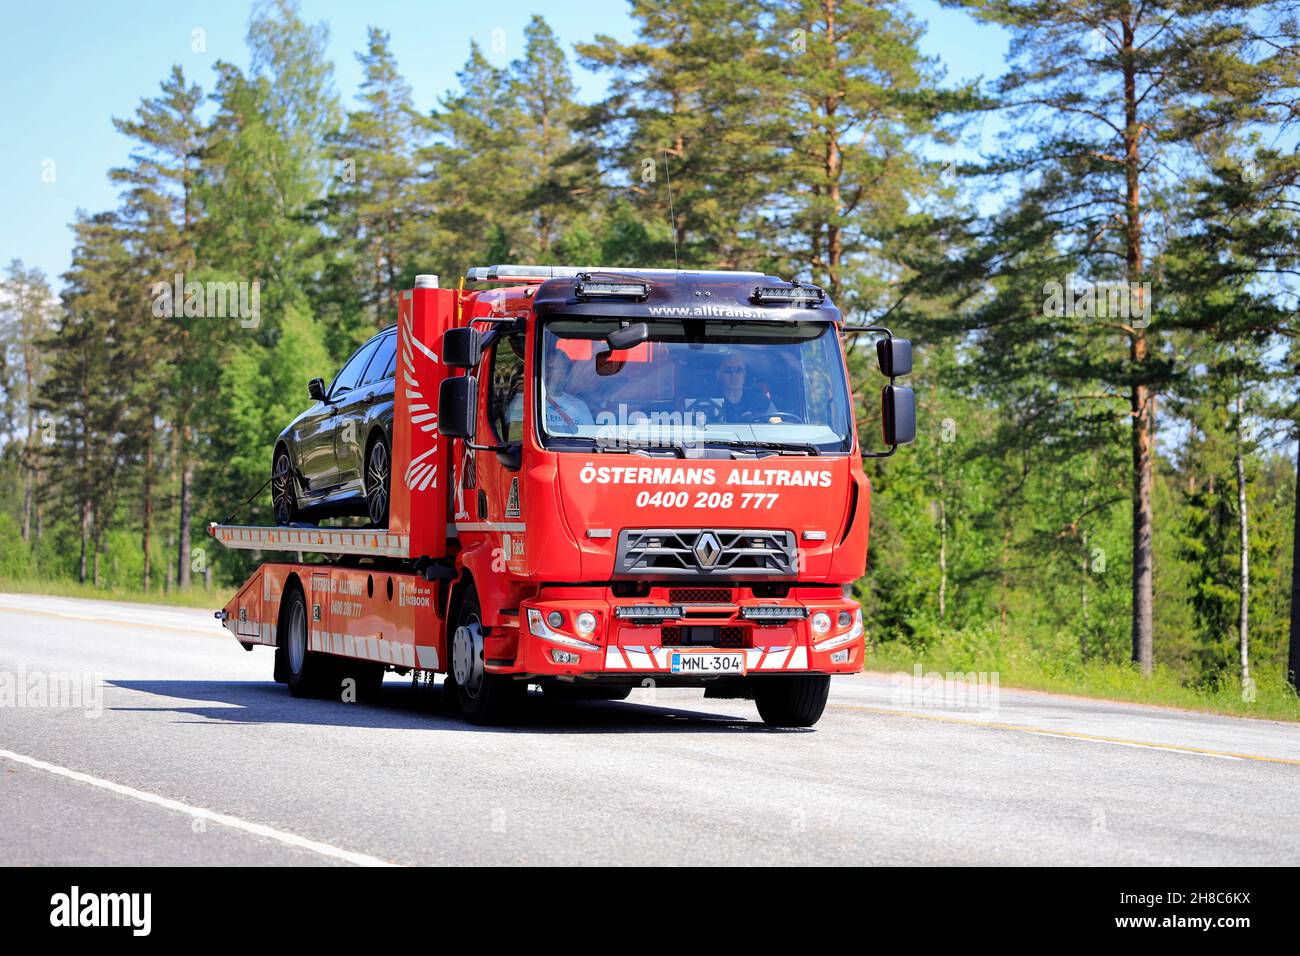 Renault-Flachbett-Rückgewinnungsfahrzeug von Ostermans ALLTRANS ab Oy, das an einem sonnigen Tag ein beschädigtes Auto entlang der Autobahn trägt. Raasepori, Finnland. 10. Juni 2021. Stockfoto